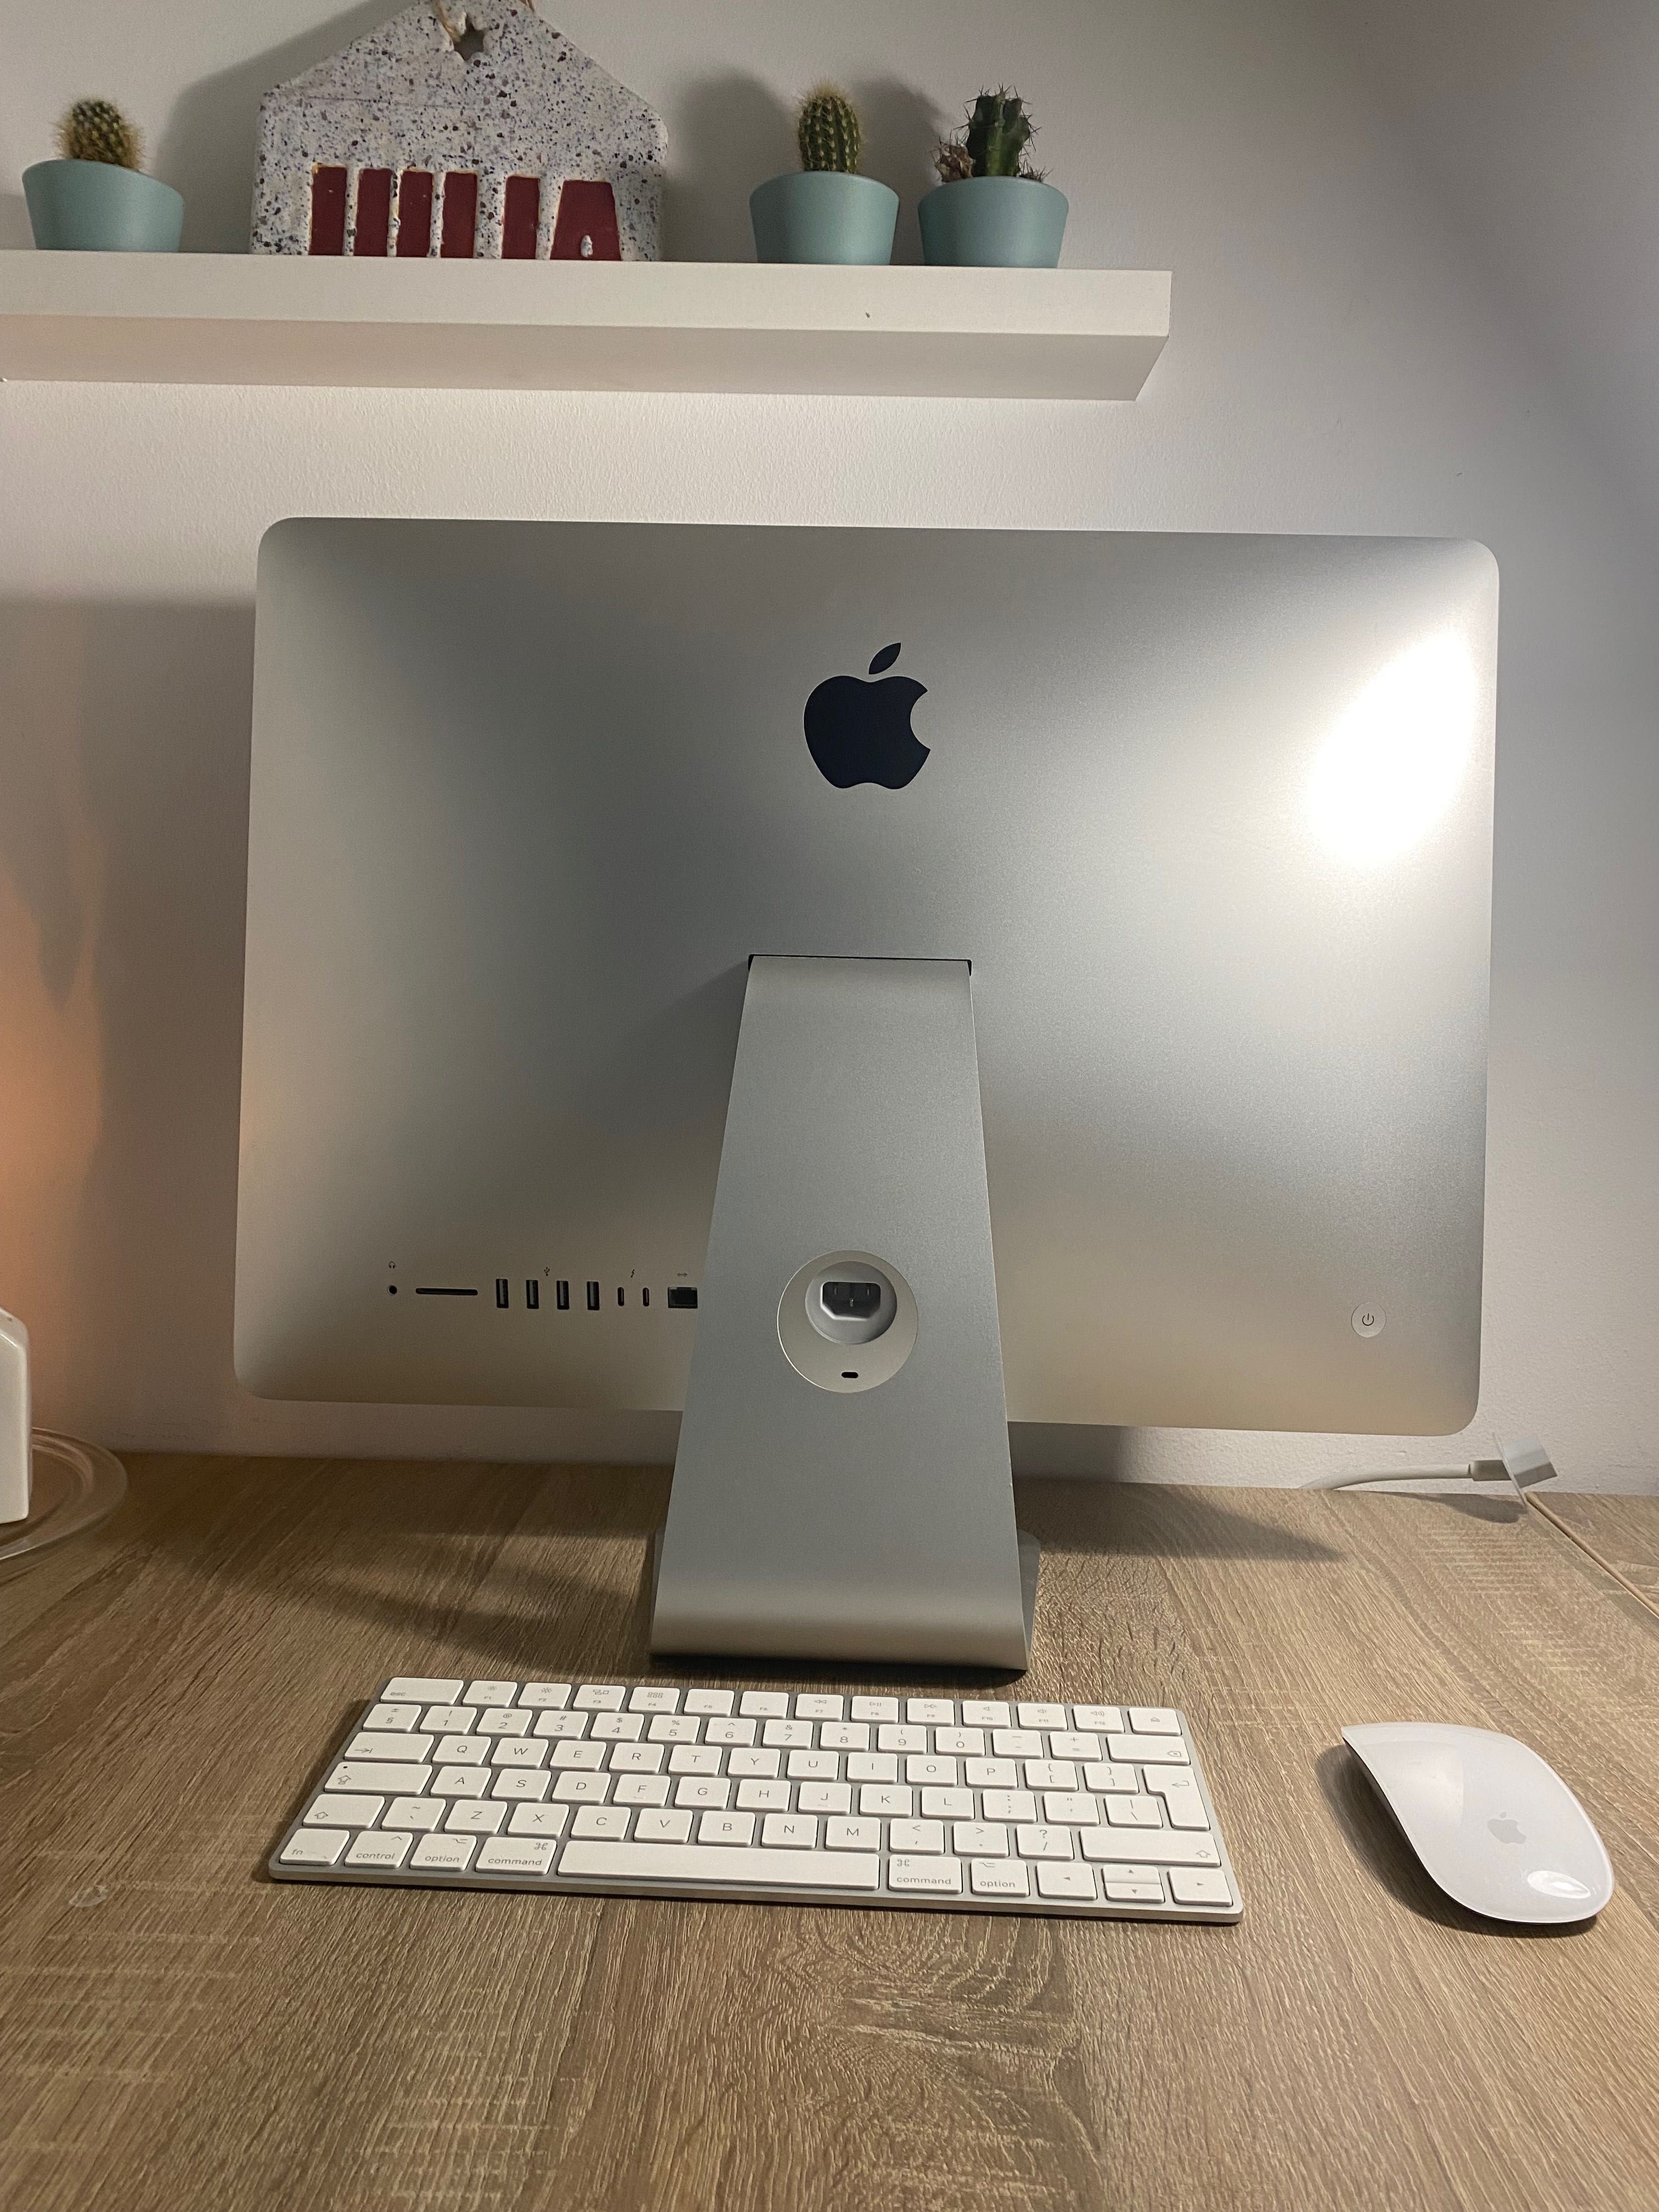 iMac Catalina 21.5(2017)1 TB 8GB RAM + klawiatura apple i mysz apple